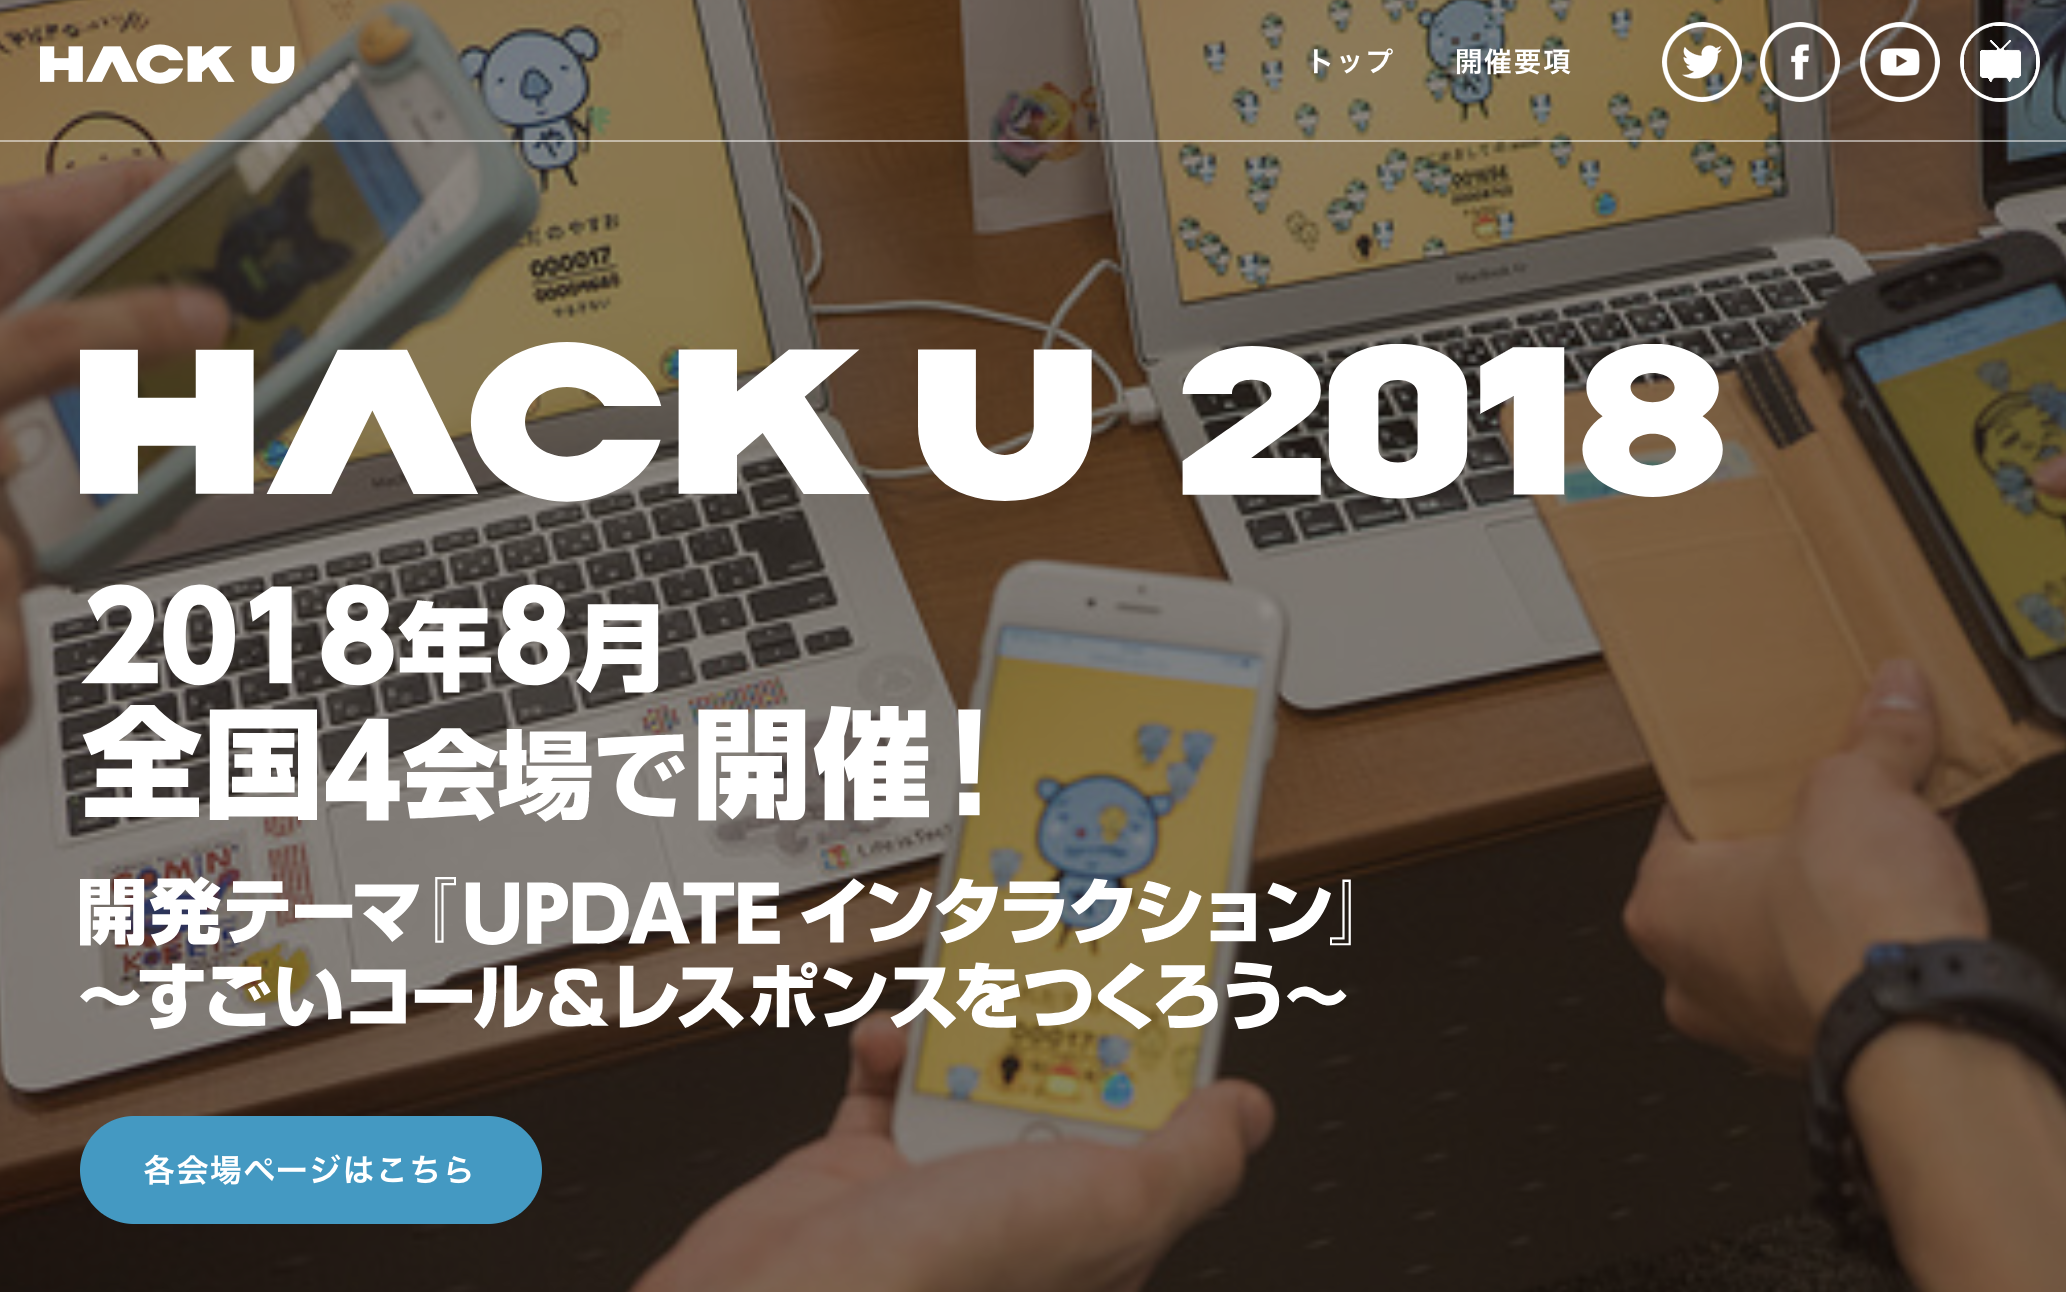 Hack U 2018